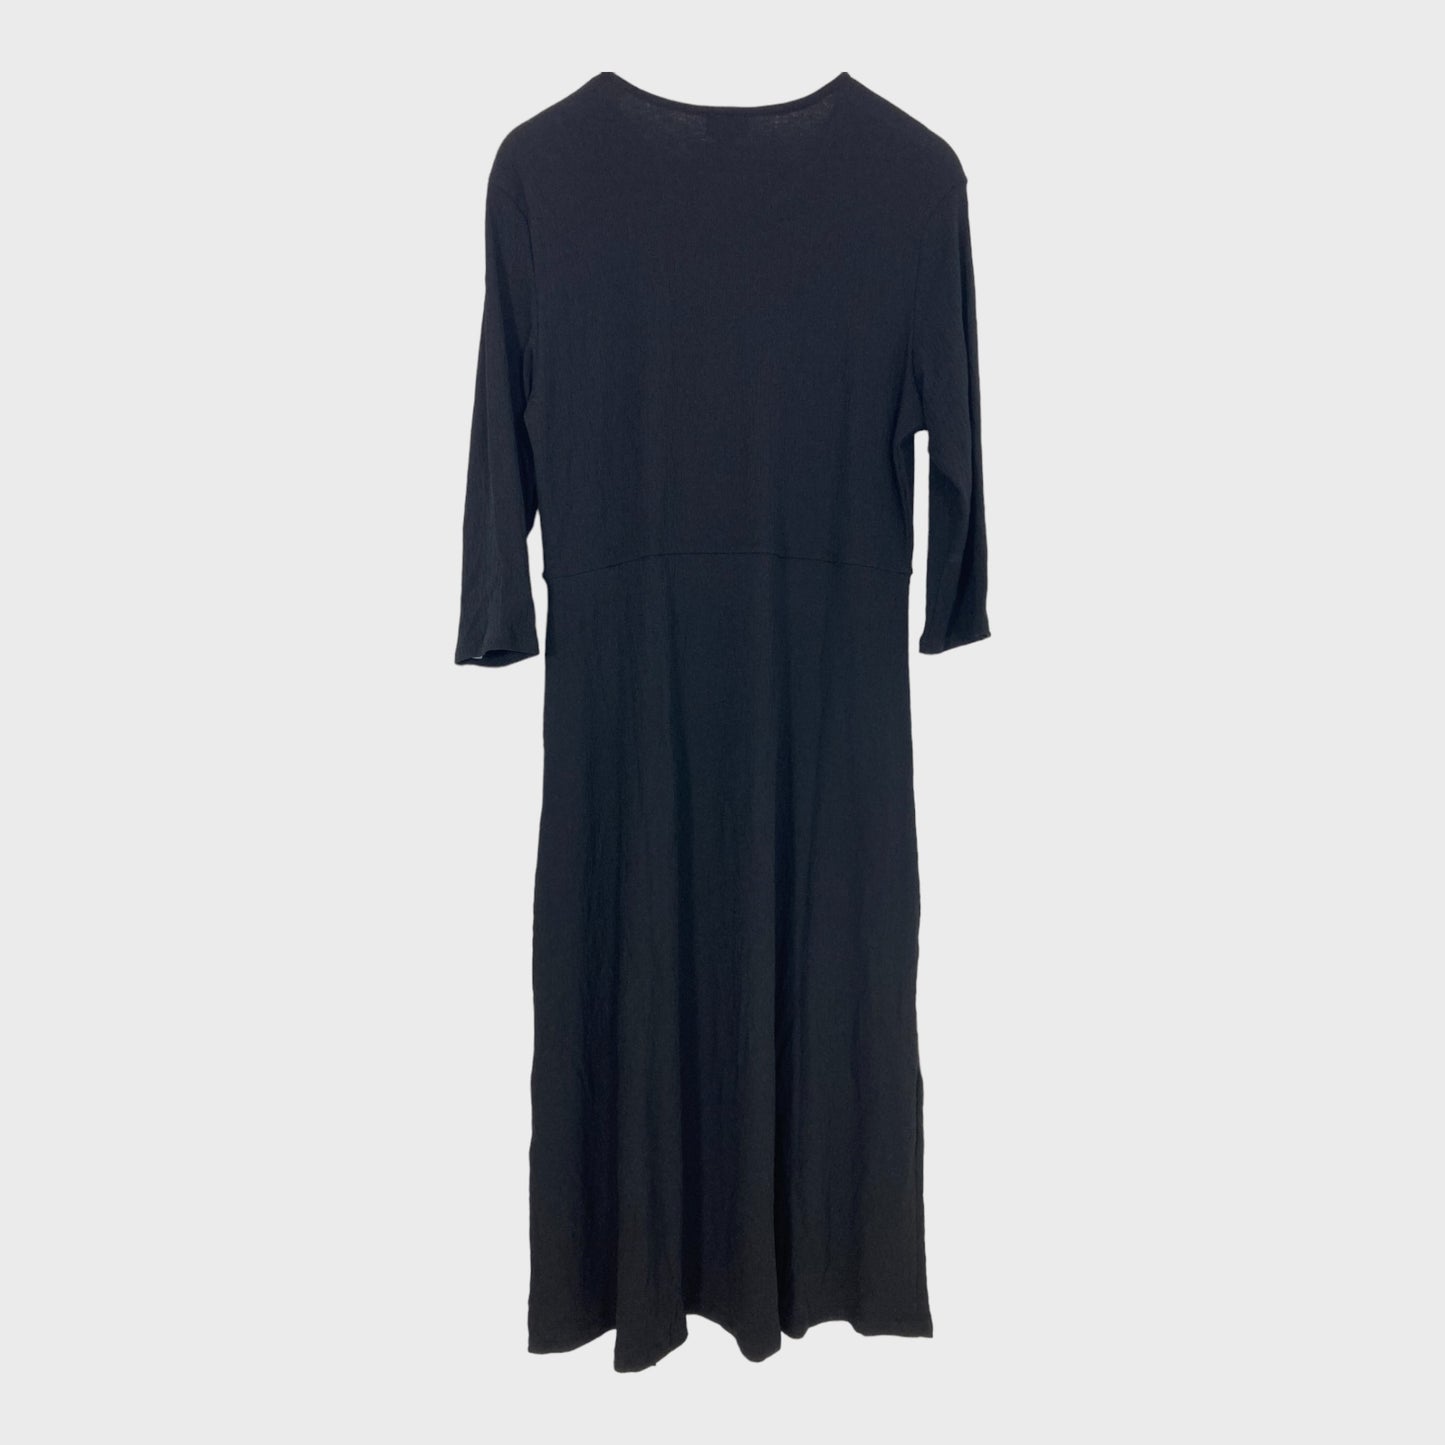 Womens Plus Black Textured Jersey Midi Dress